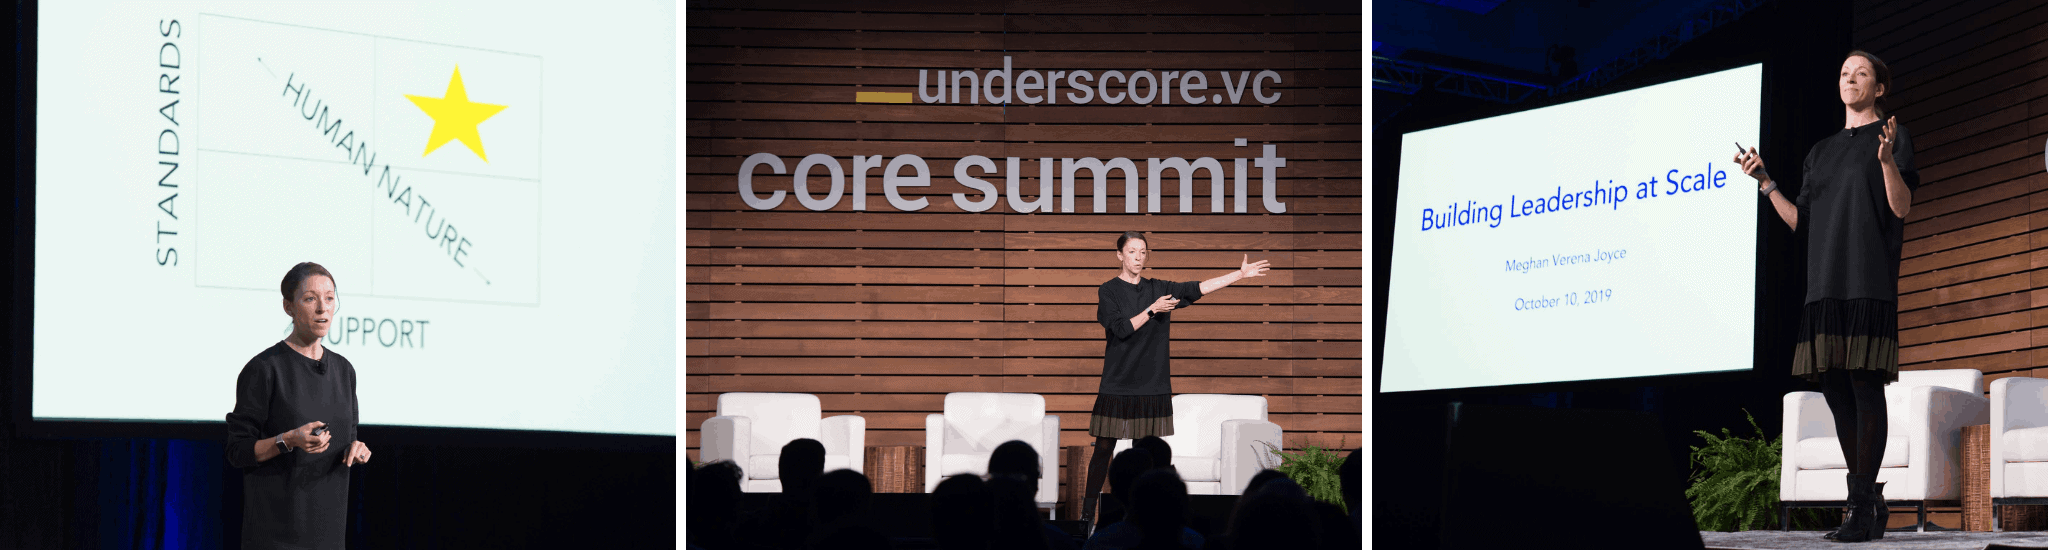 Meghan Joyce Speaking at Core Summit 2019